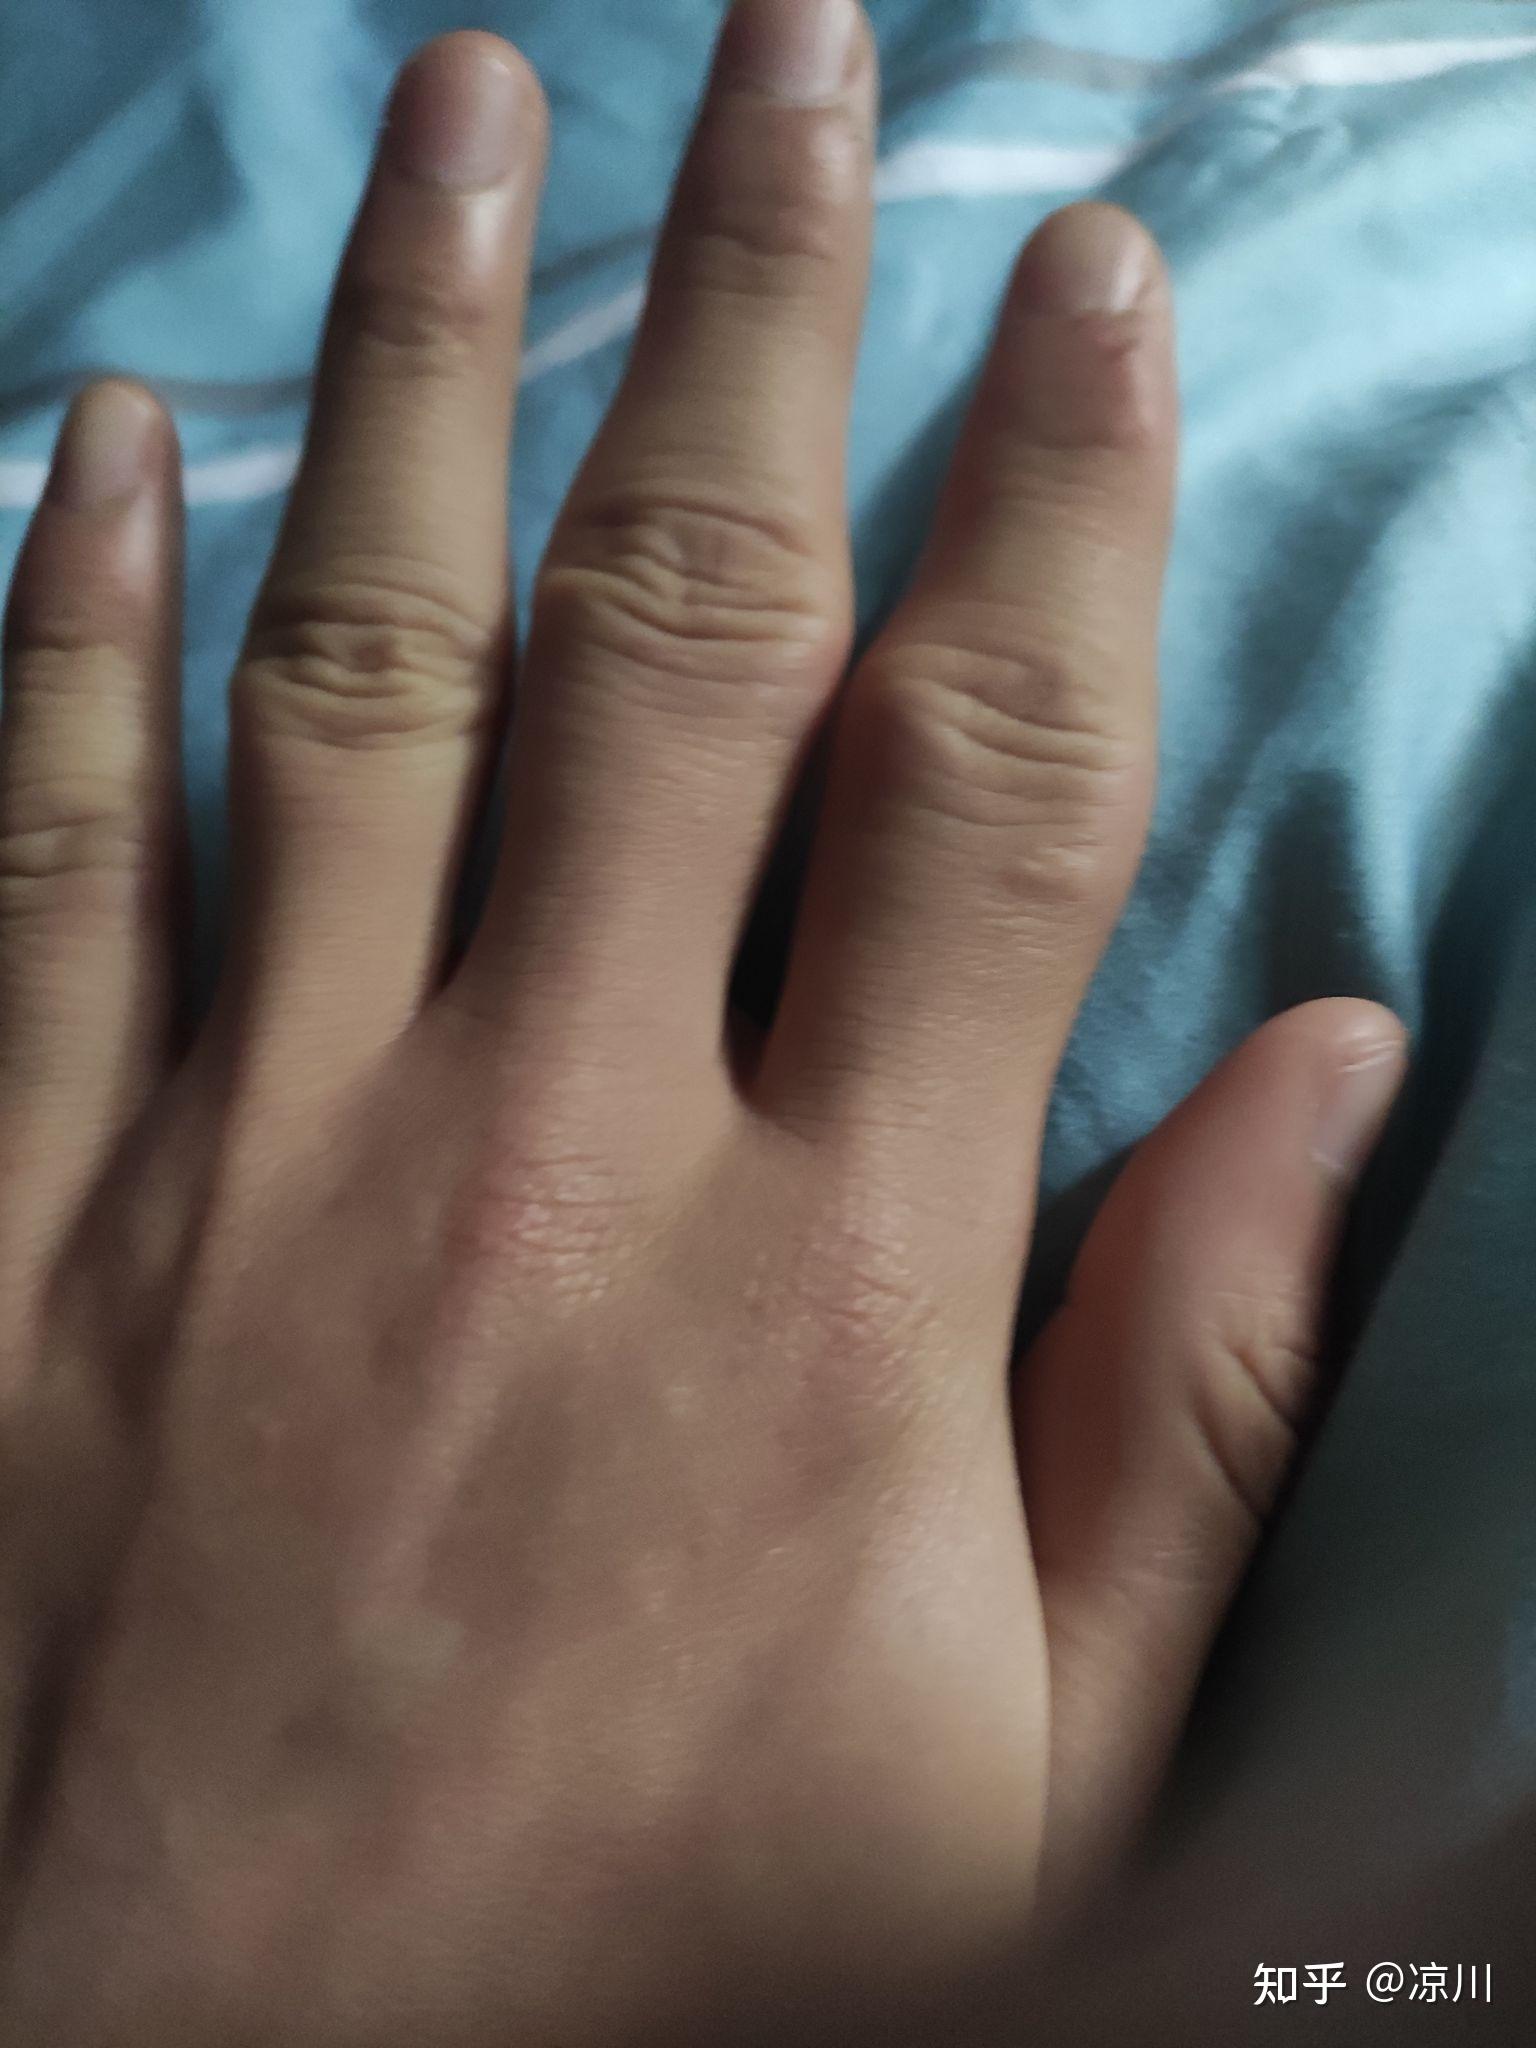 手指关节粗大,褶皱多怎么改善? 